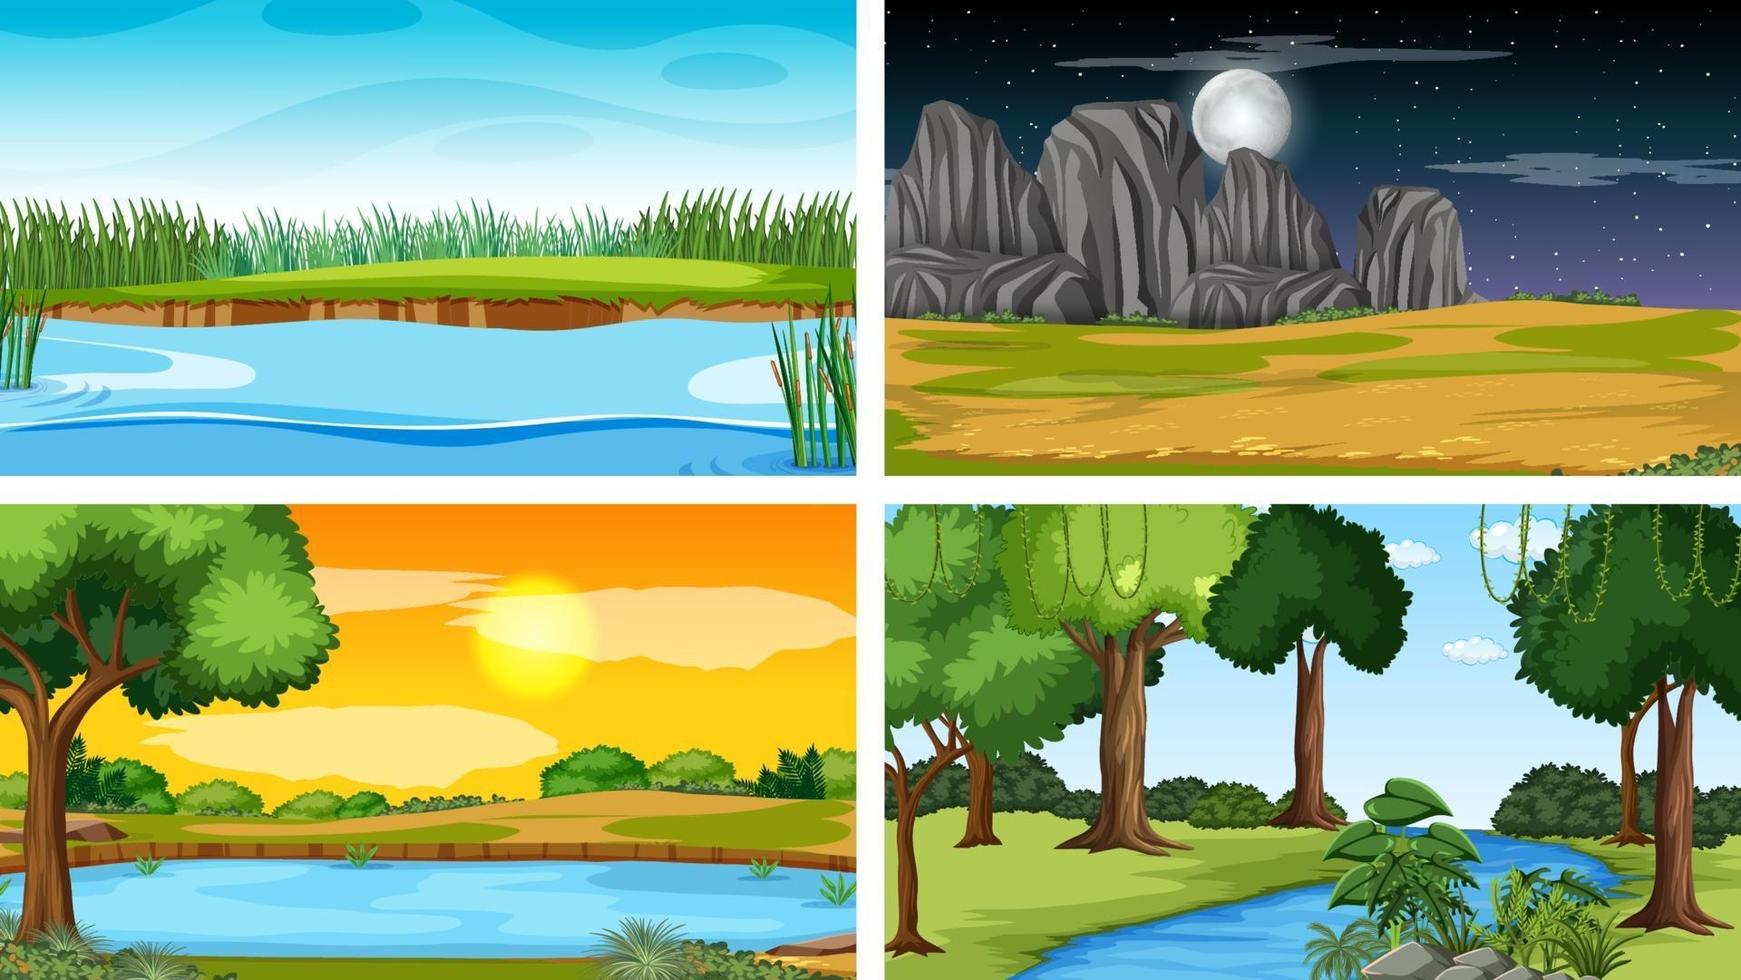 vier verschiedene Szene von Naturpark und Wald vektor